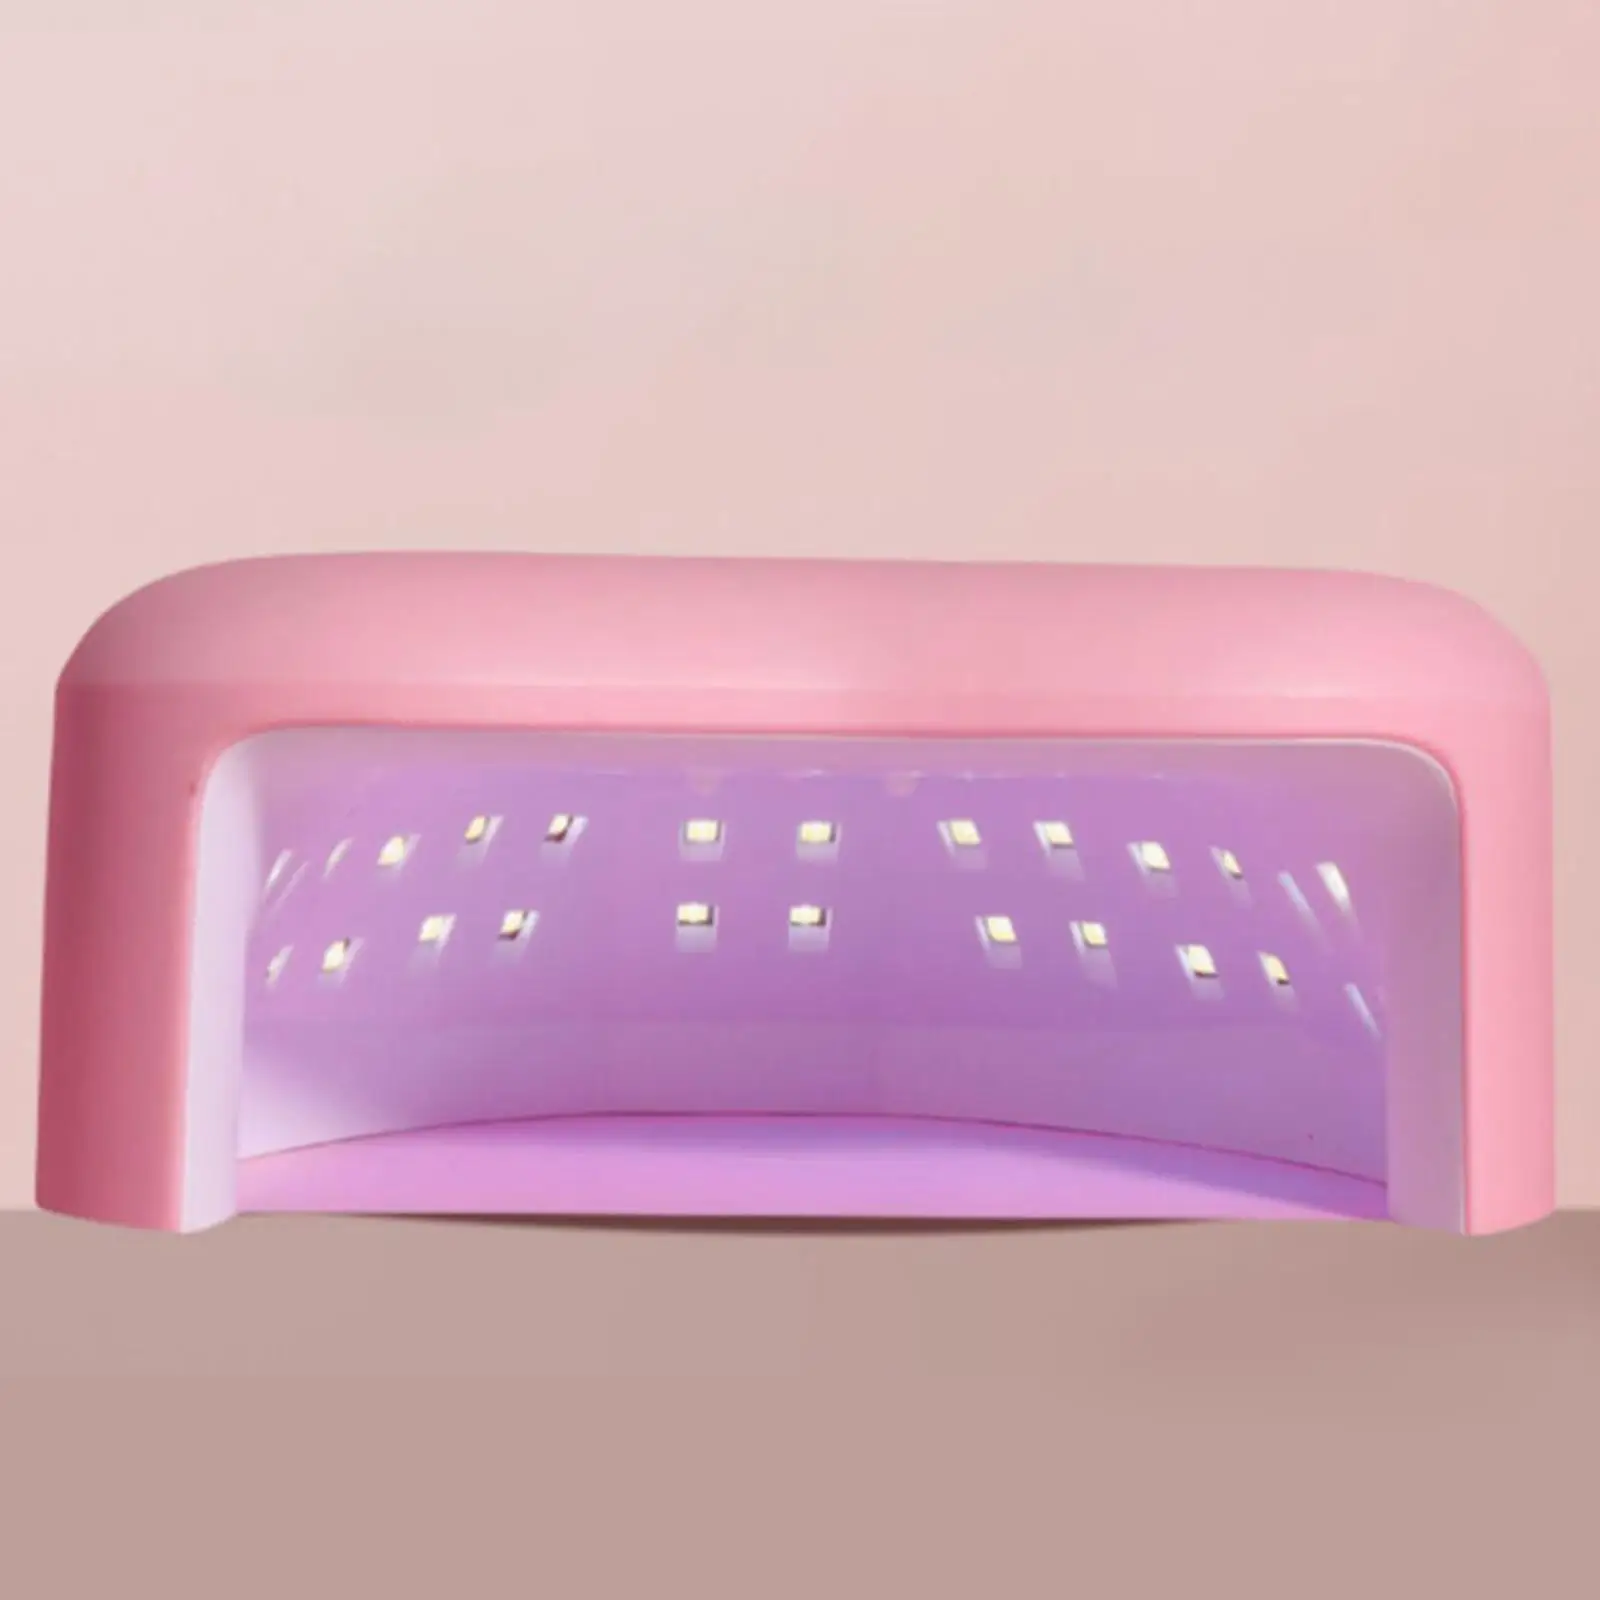 LED Nail Lamp 180W Nail Tools Digital Display Professional Pink for Salon